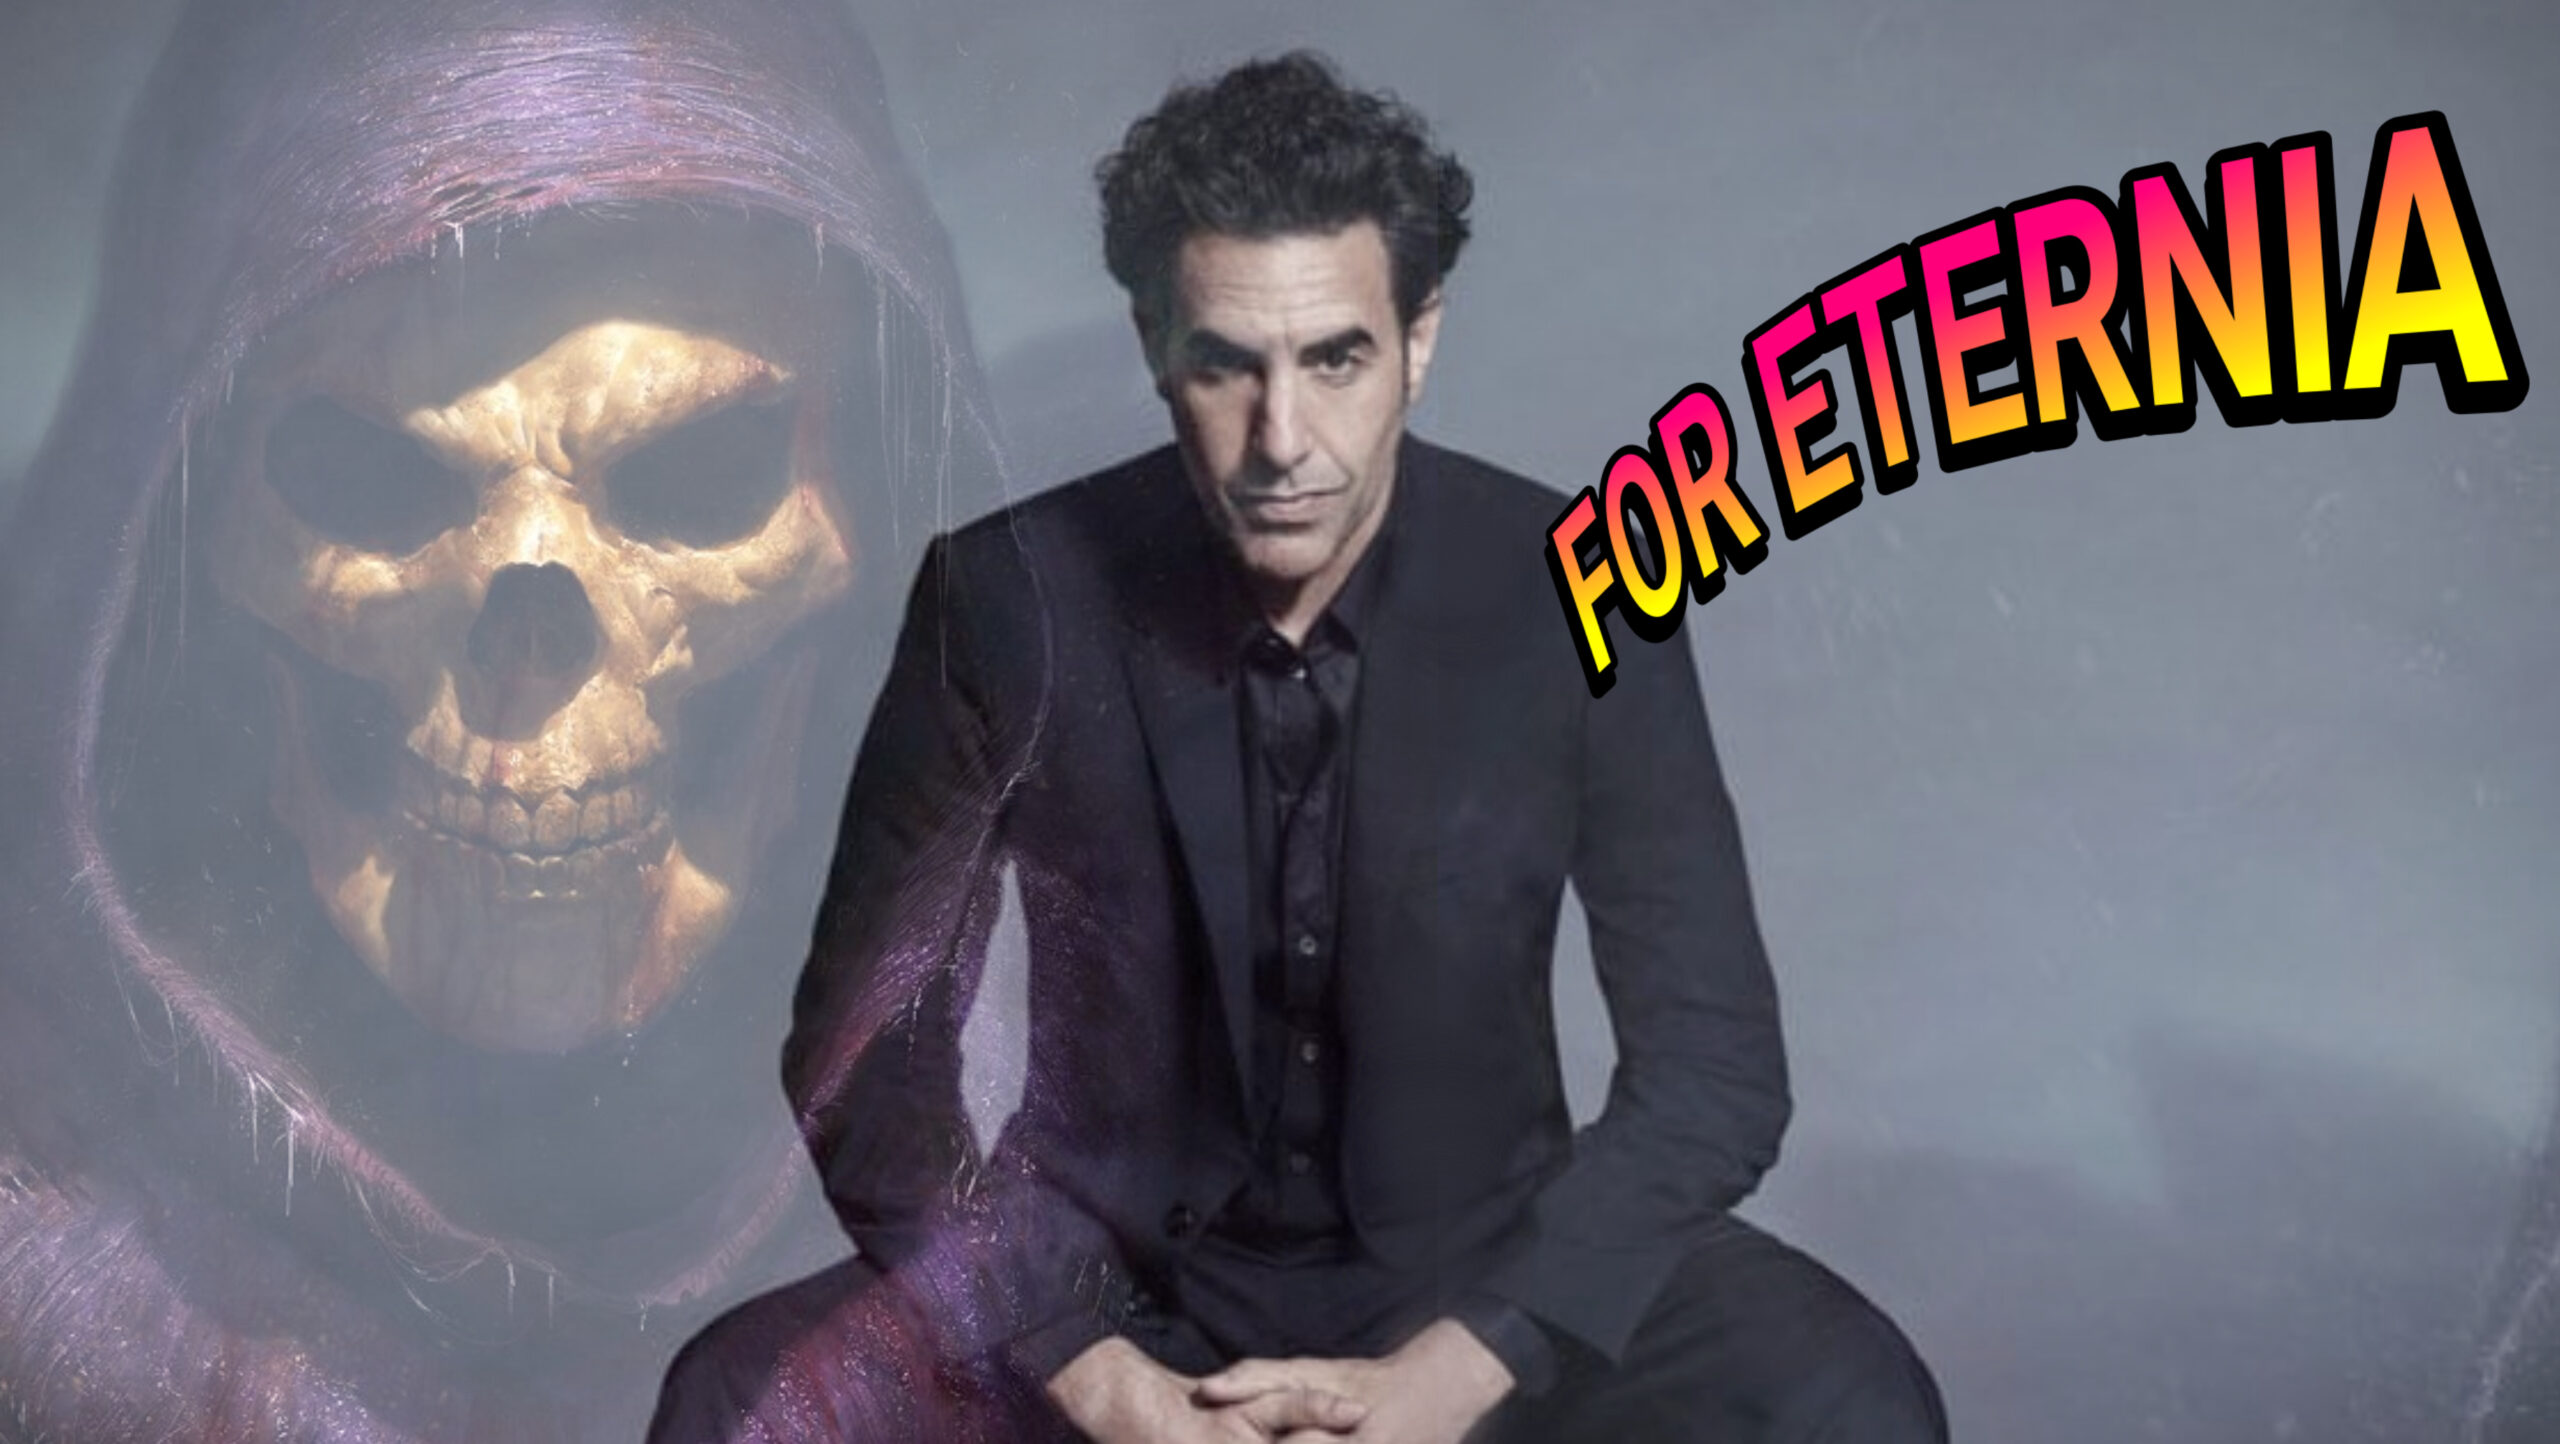 INTERESTING RUMOR: Actor Sacha Baron Cohen has been cast as Skeletor in new live-action MOTU Movie Gossip